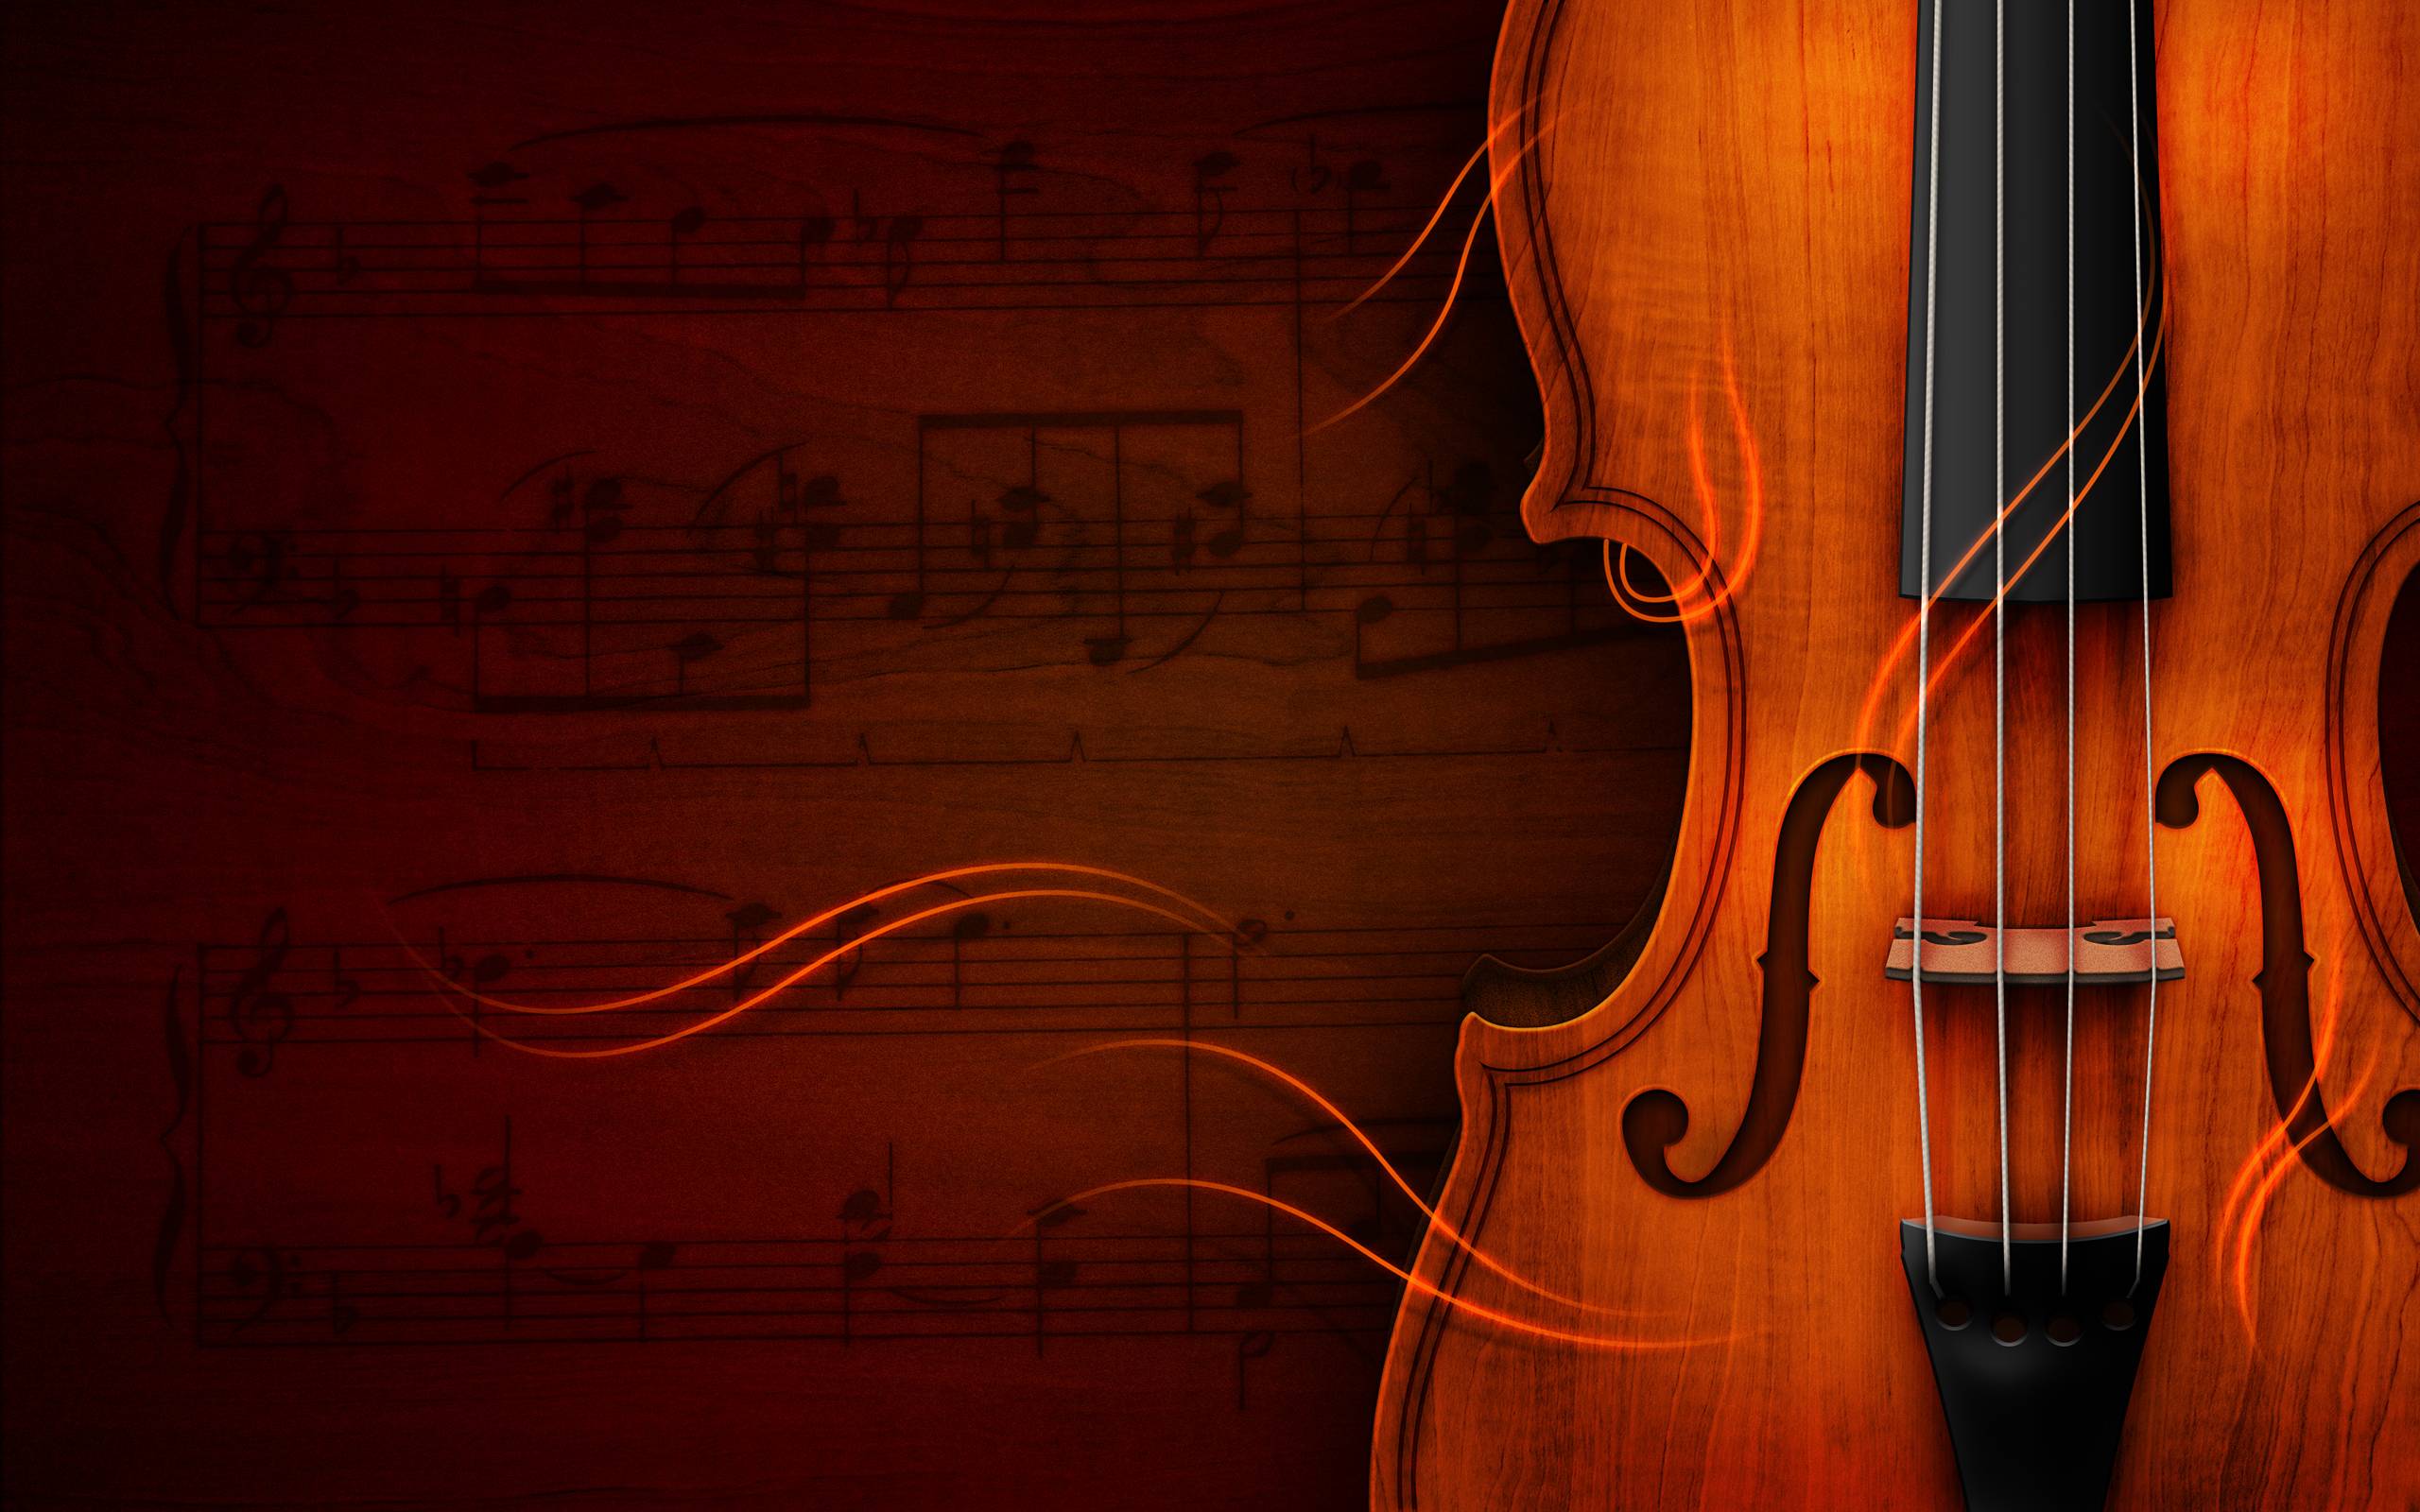 Beautiful Violin Wallpaper